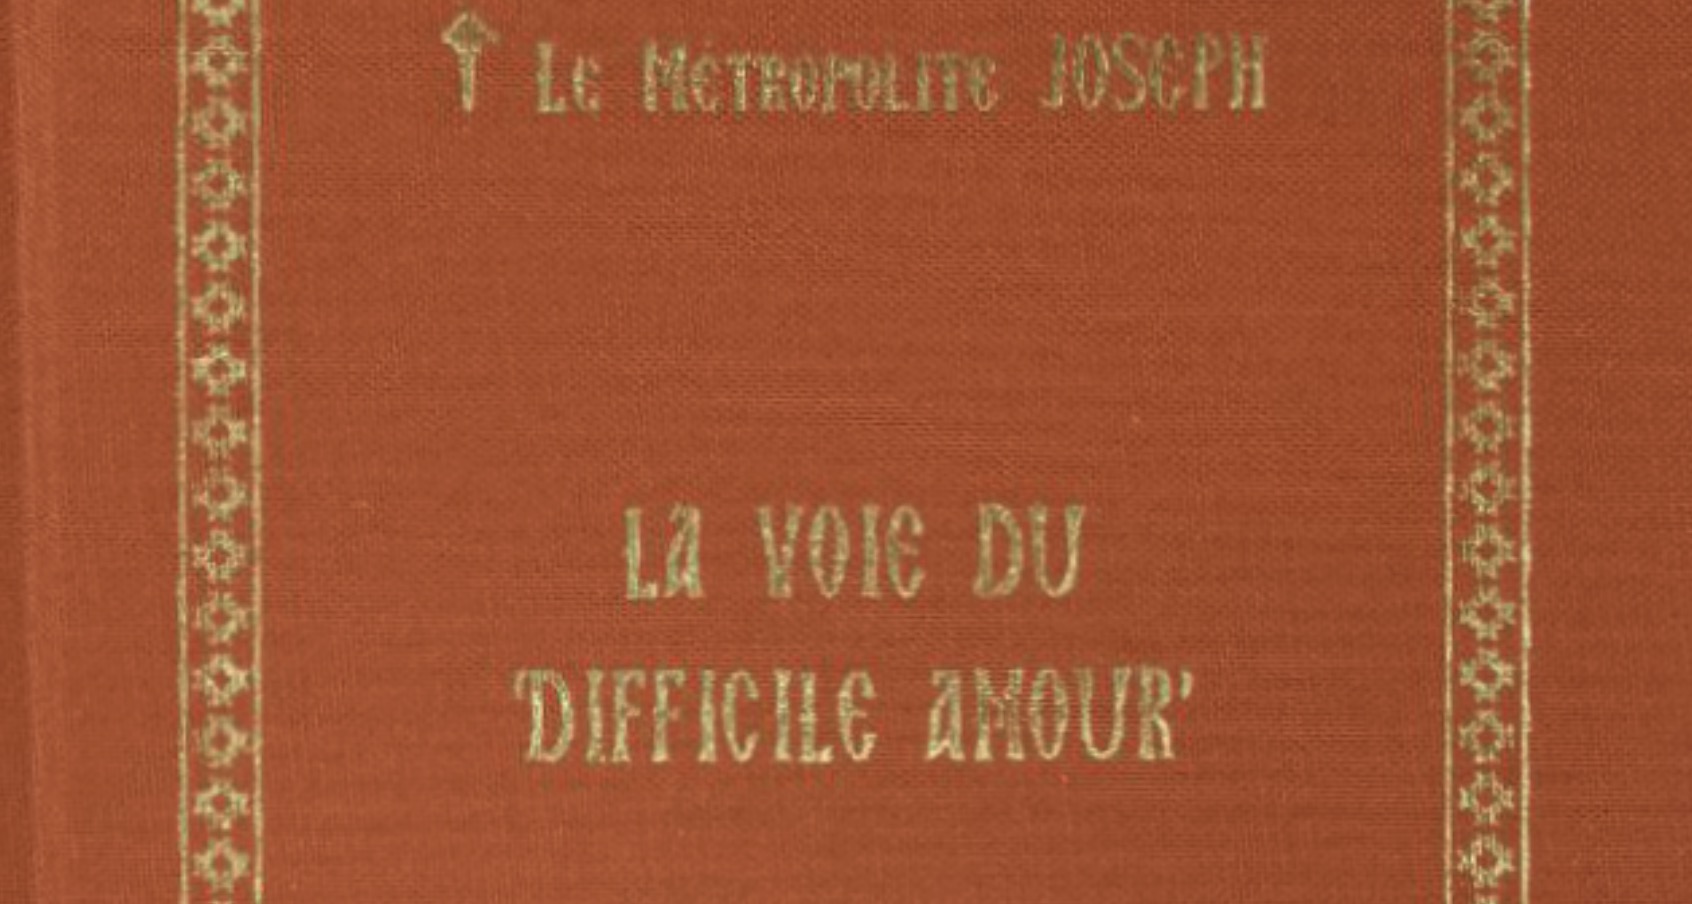 Vient de paraître aux Éditions apostolia : « la voie du ‘difficile amour’ » par le métropolite joseph